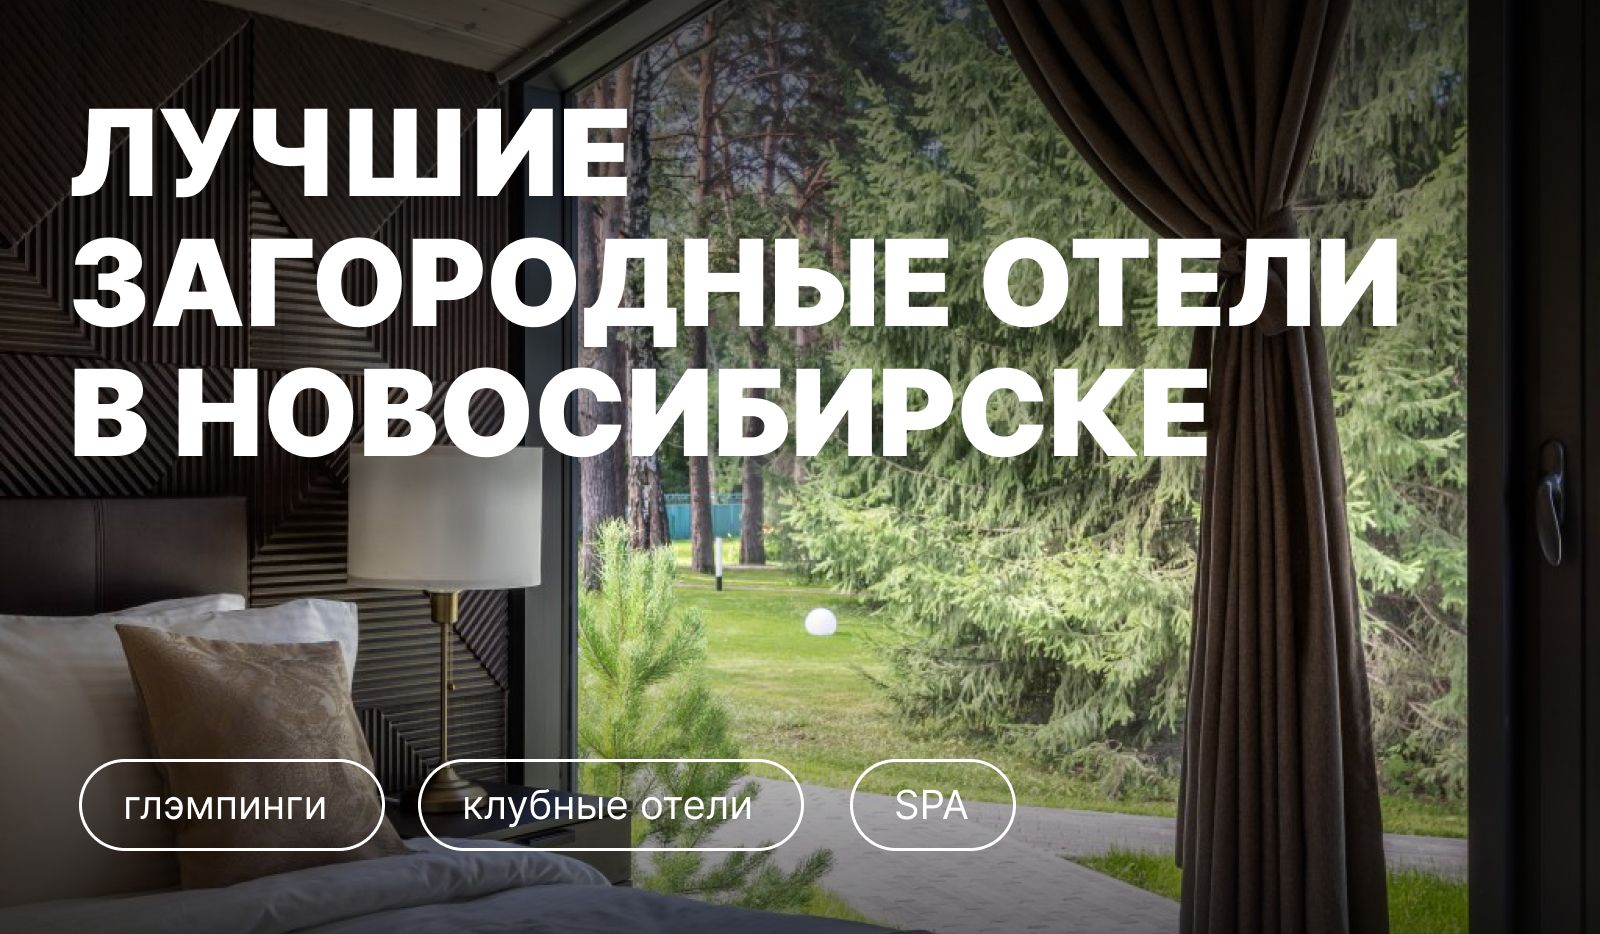 Лучшие загородные отели Новосибирска и Новосибирской области